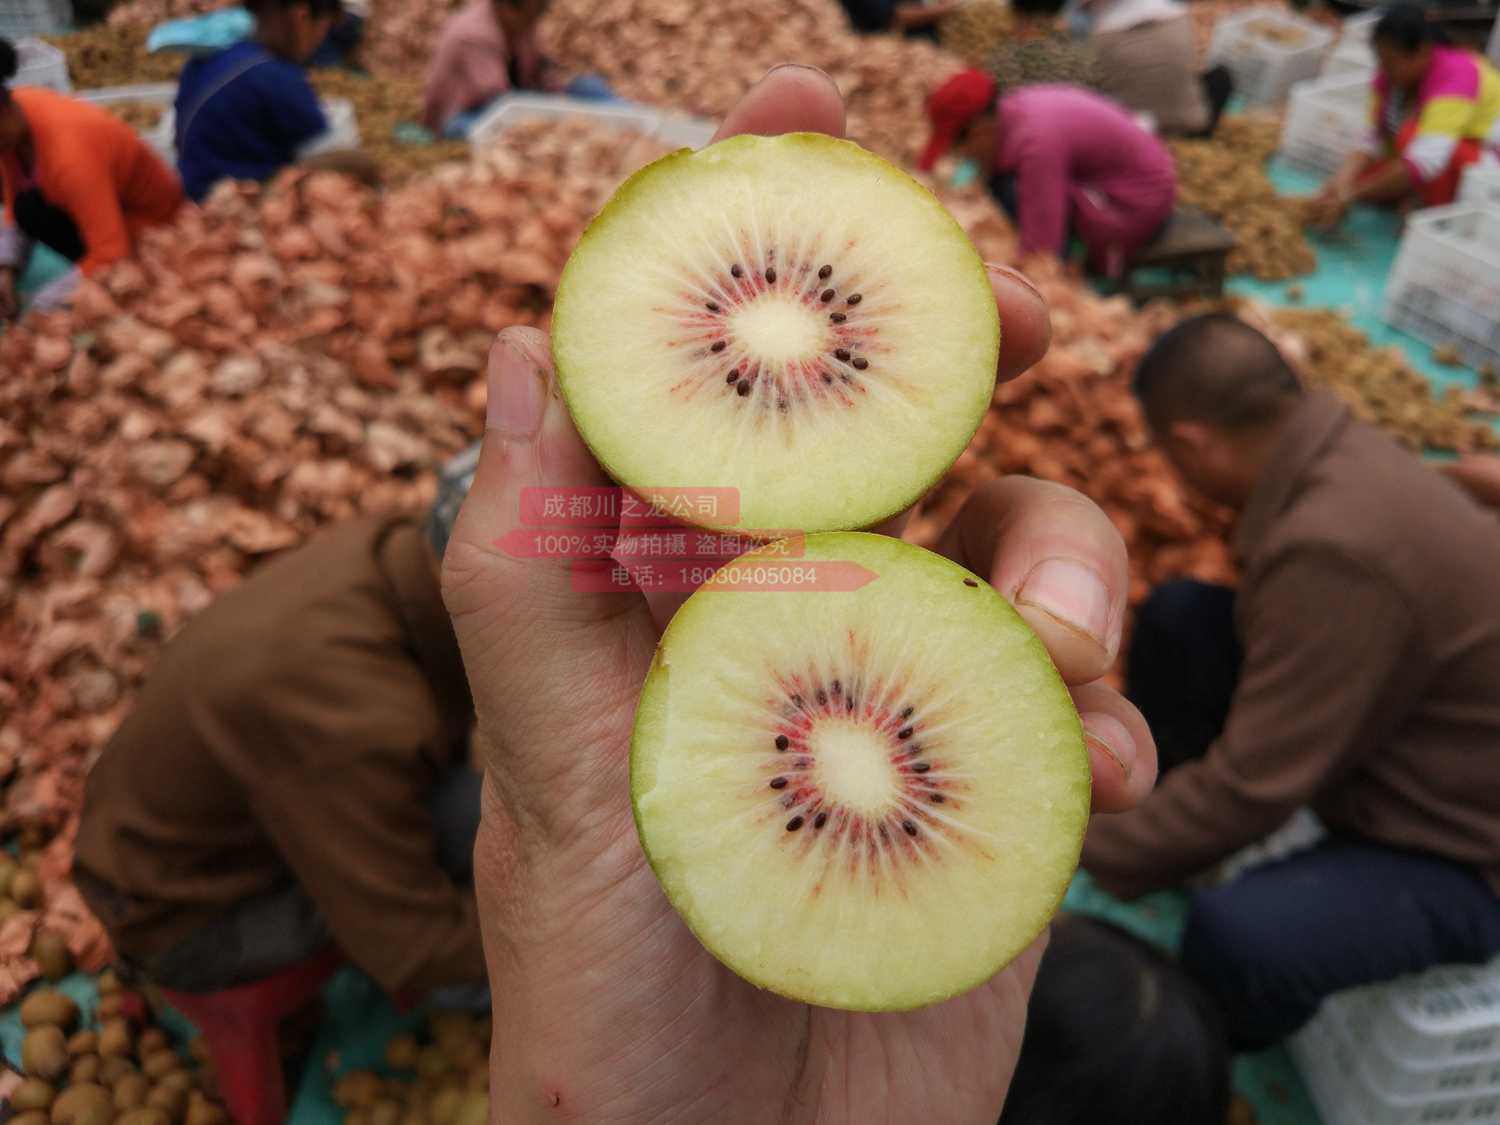 四川蒲江东红猕猴桃产品远销到了山东和天津等地